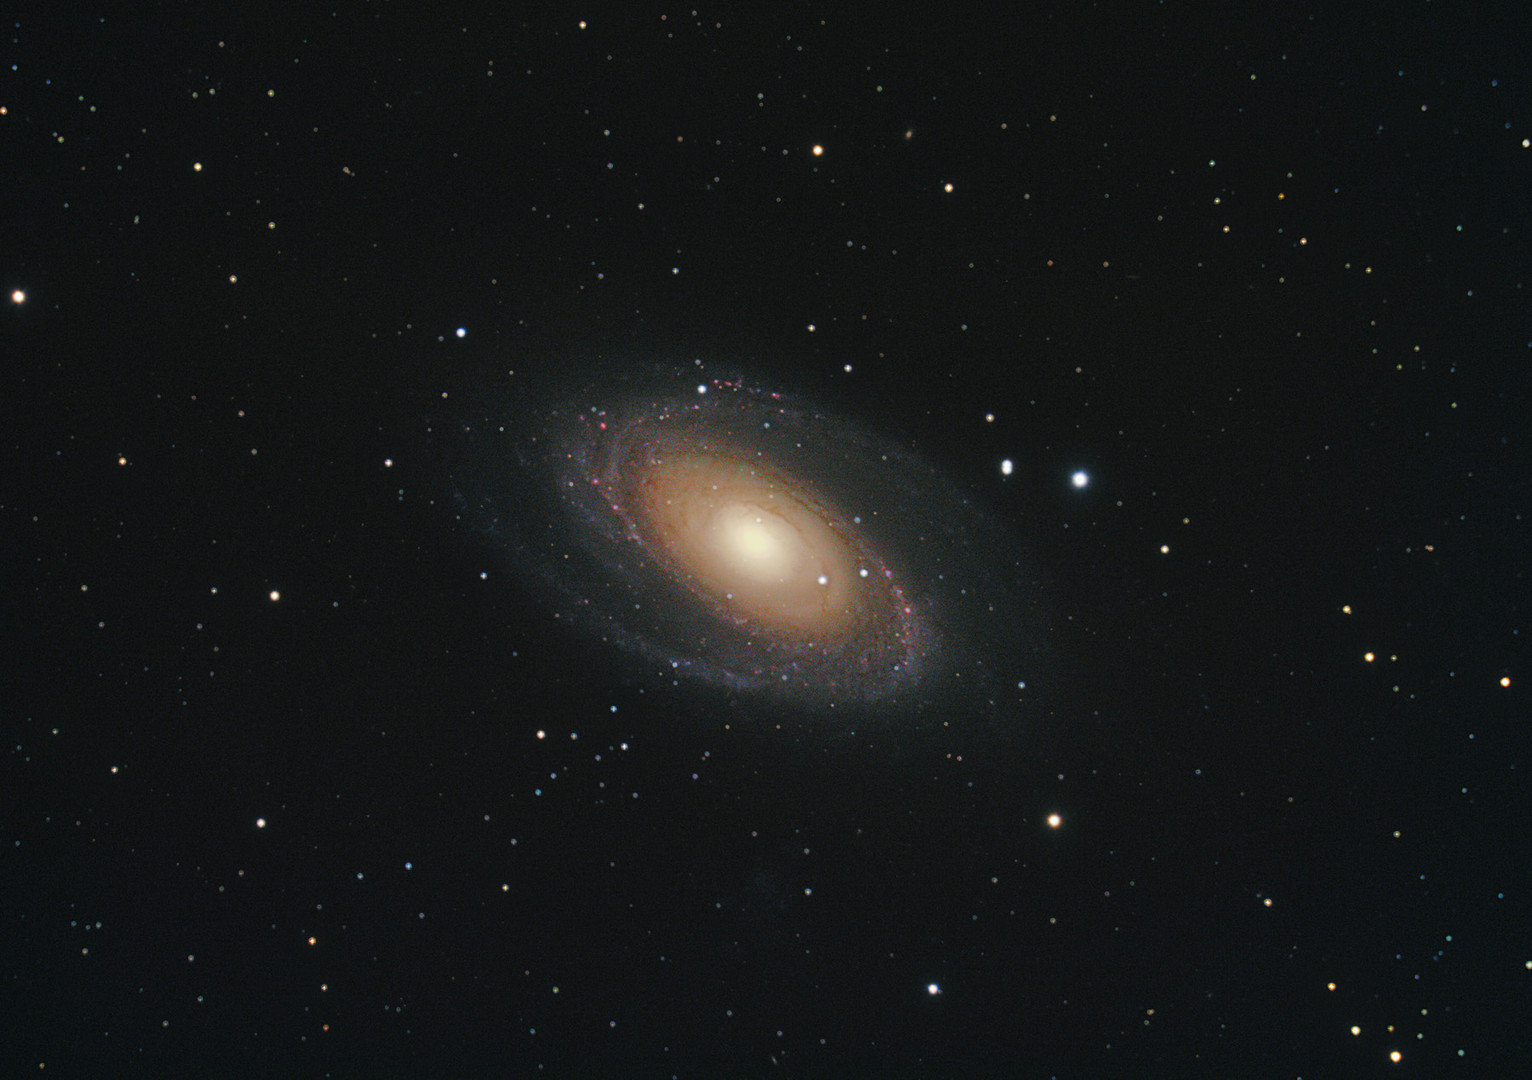 M81 (NGC 3031)